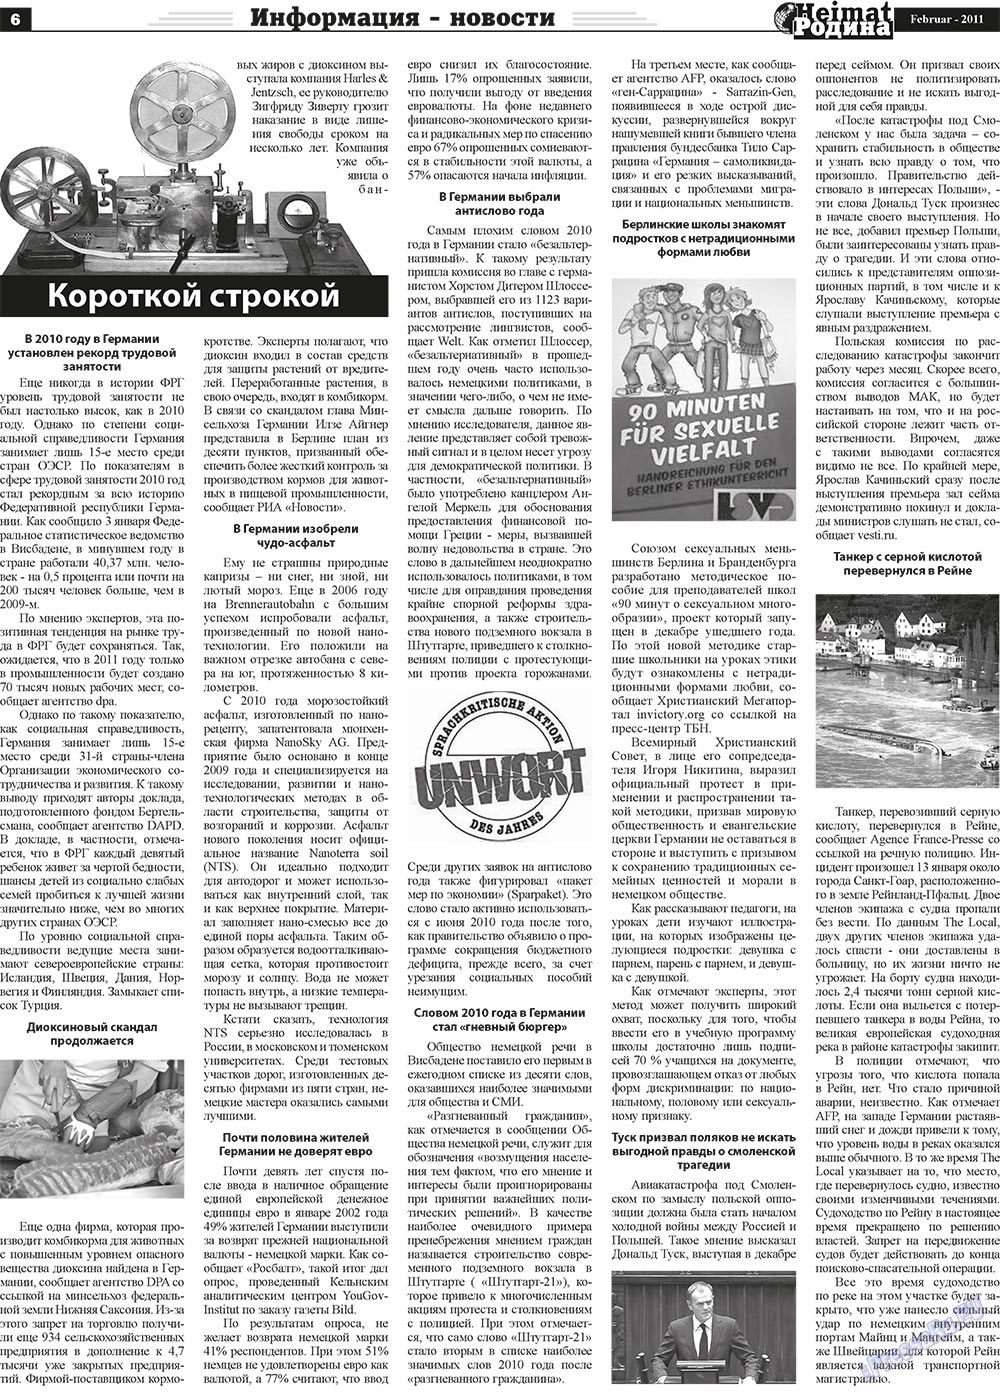 Heimat-Родина (газета). 2011 год, номер 2, стр. 6